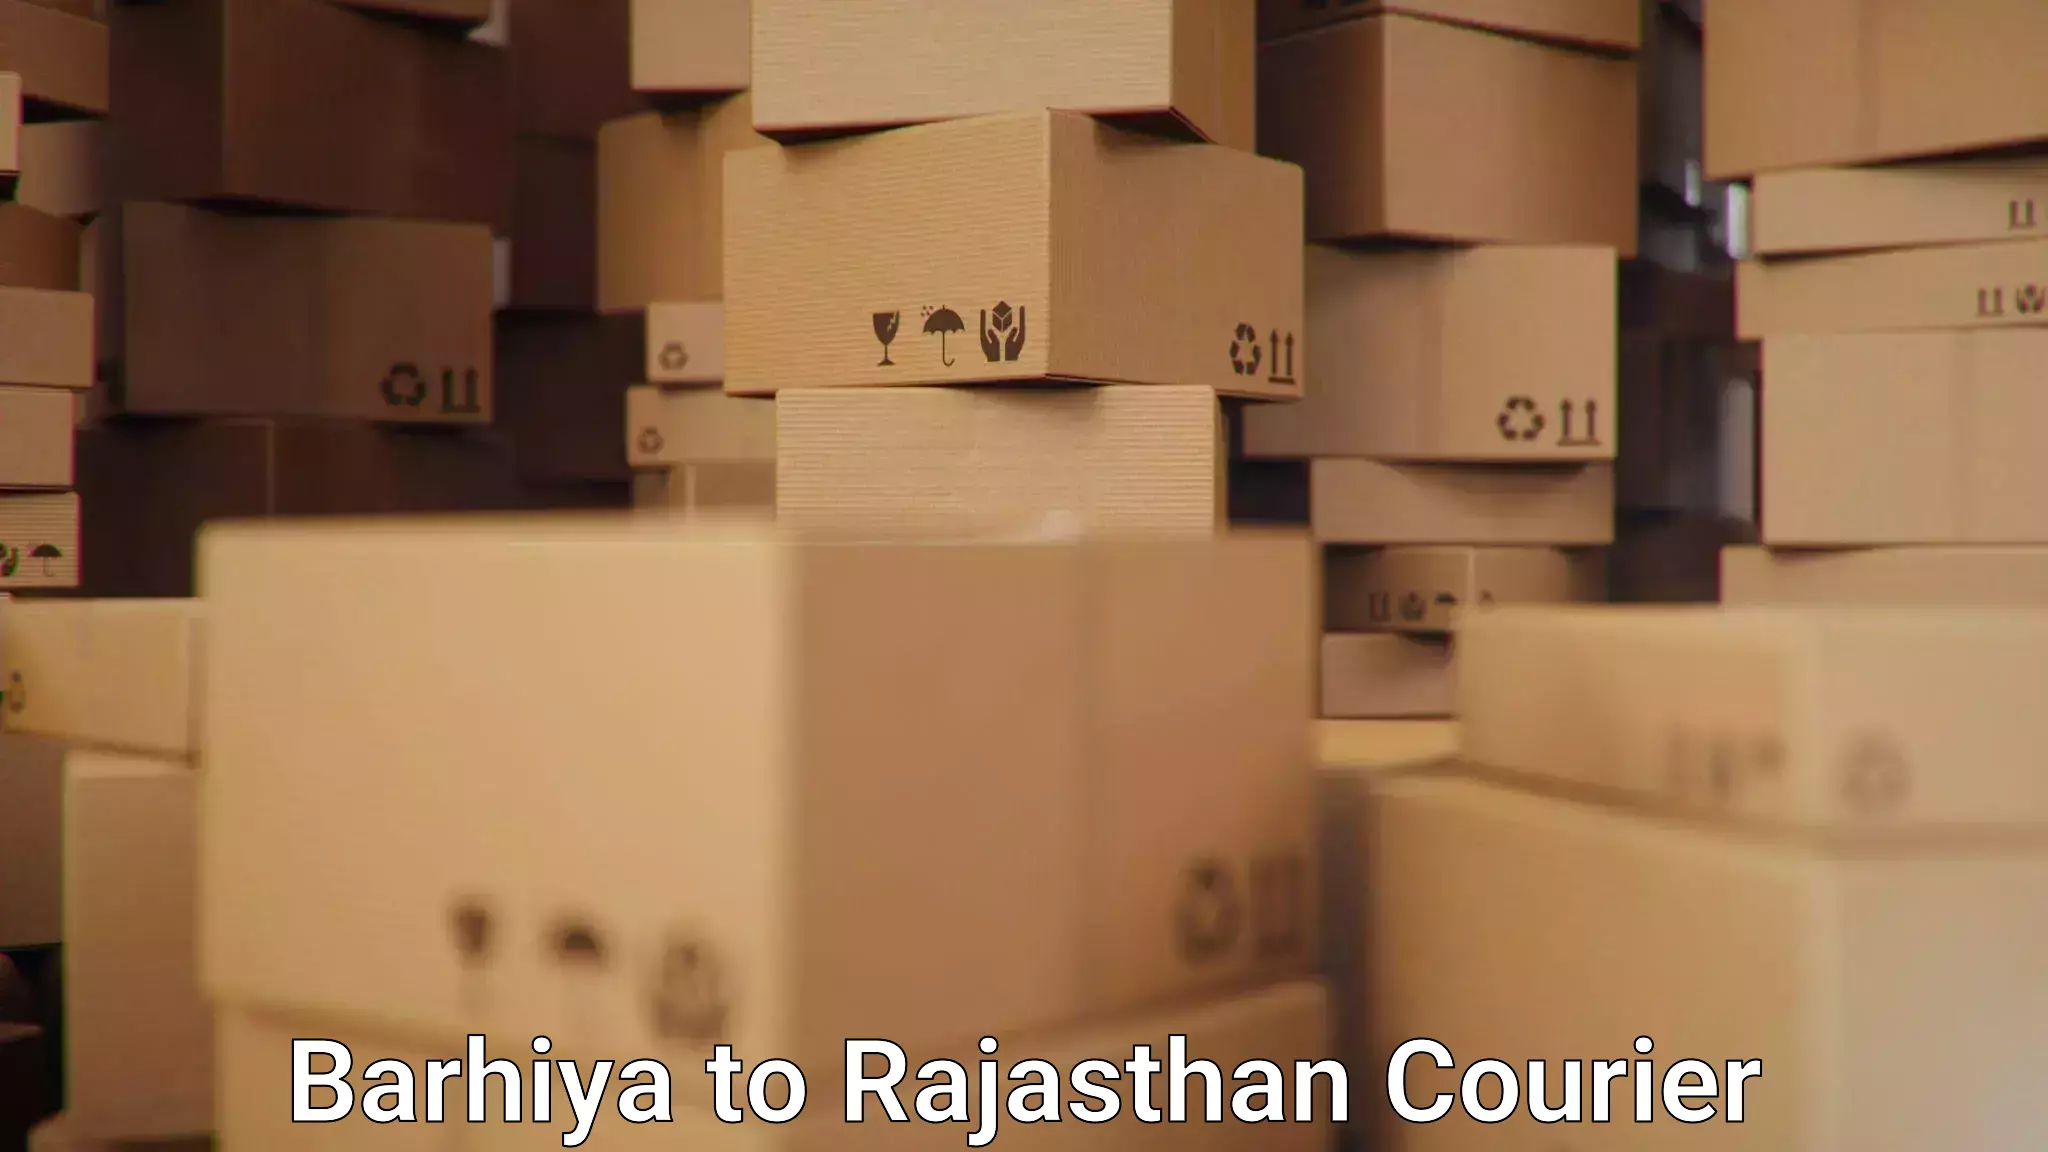 24/7 shipping services Barhiya to Jhalawar